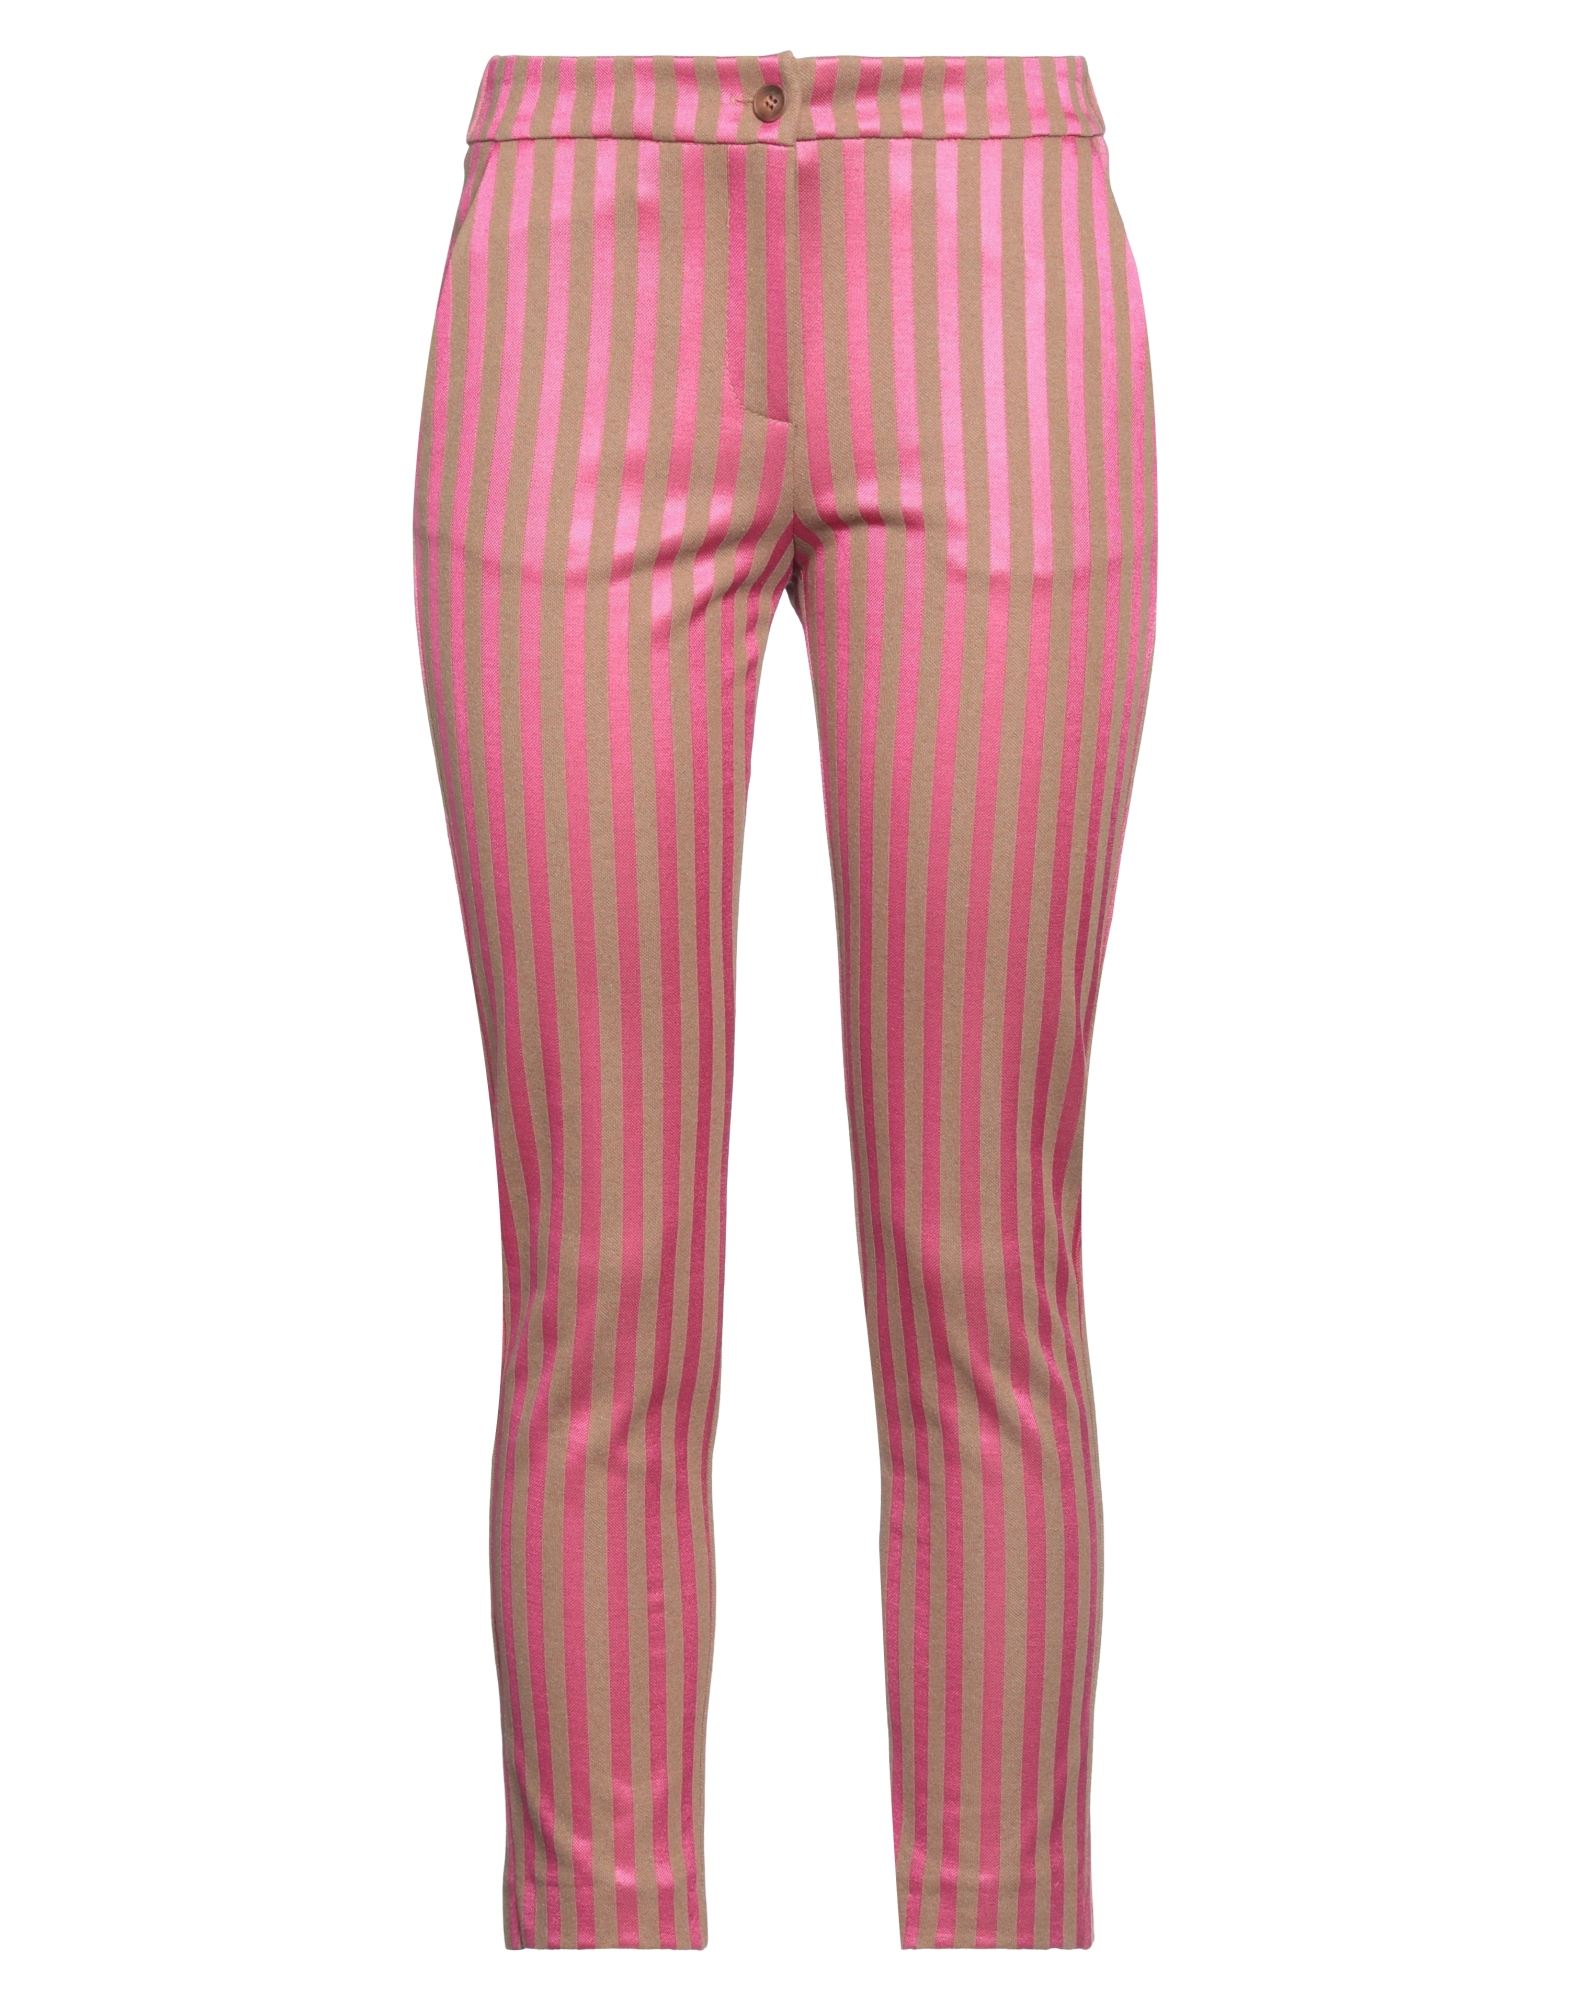 Kaos Pants In Pink